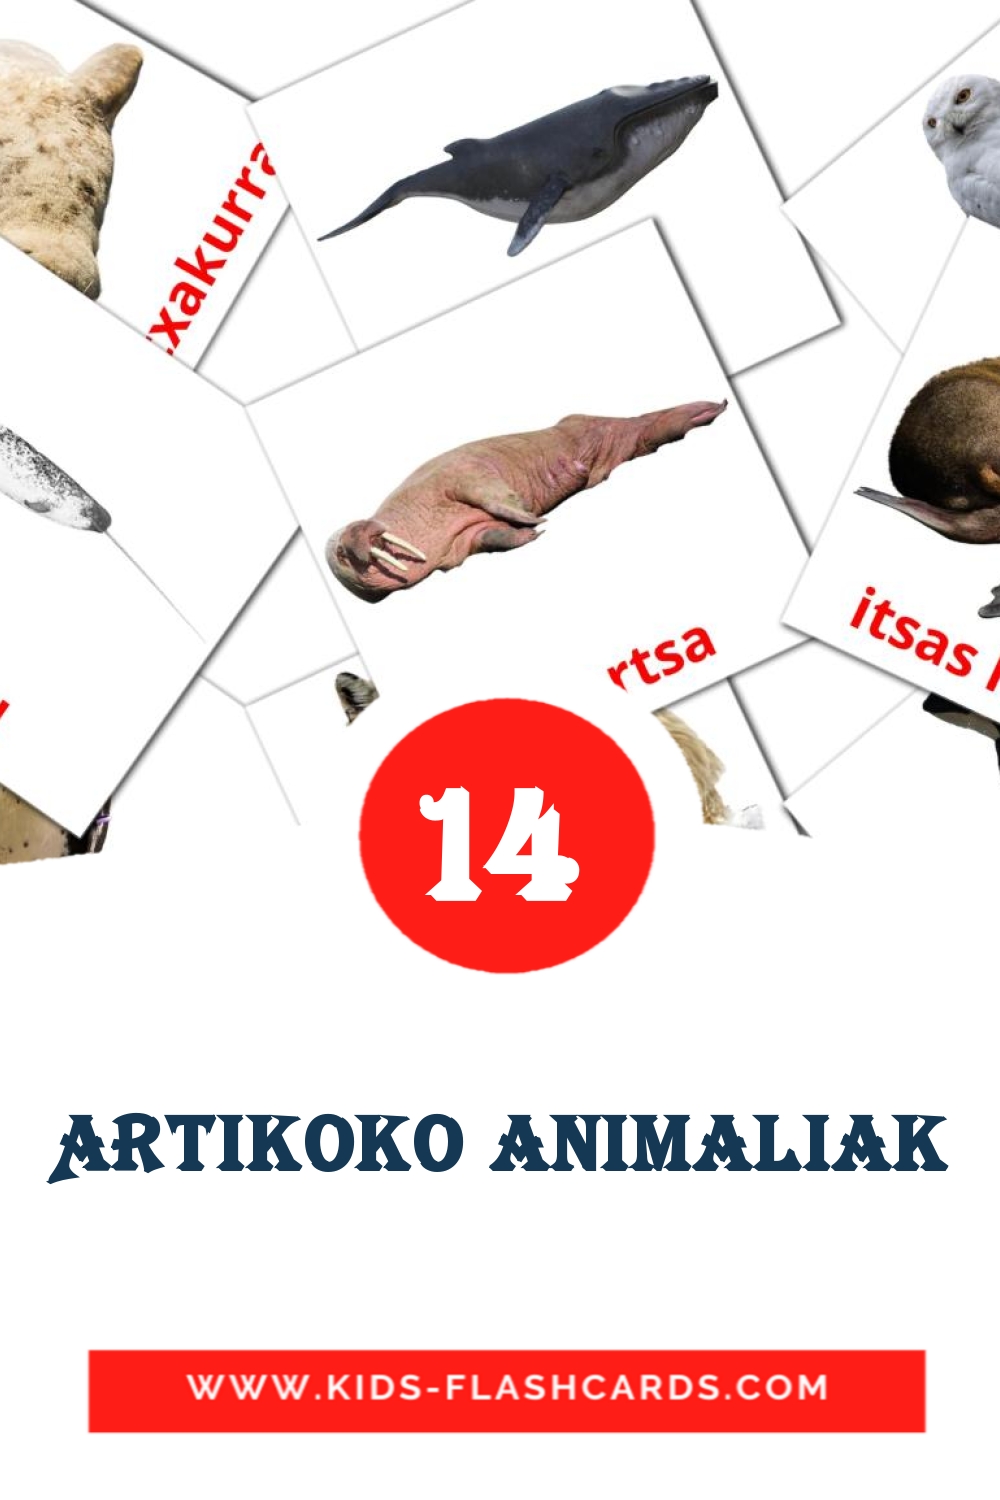 14 Cartões com Imagens de Artikoko animaliak para Jardim de Infância em basco